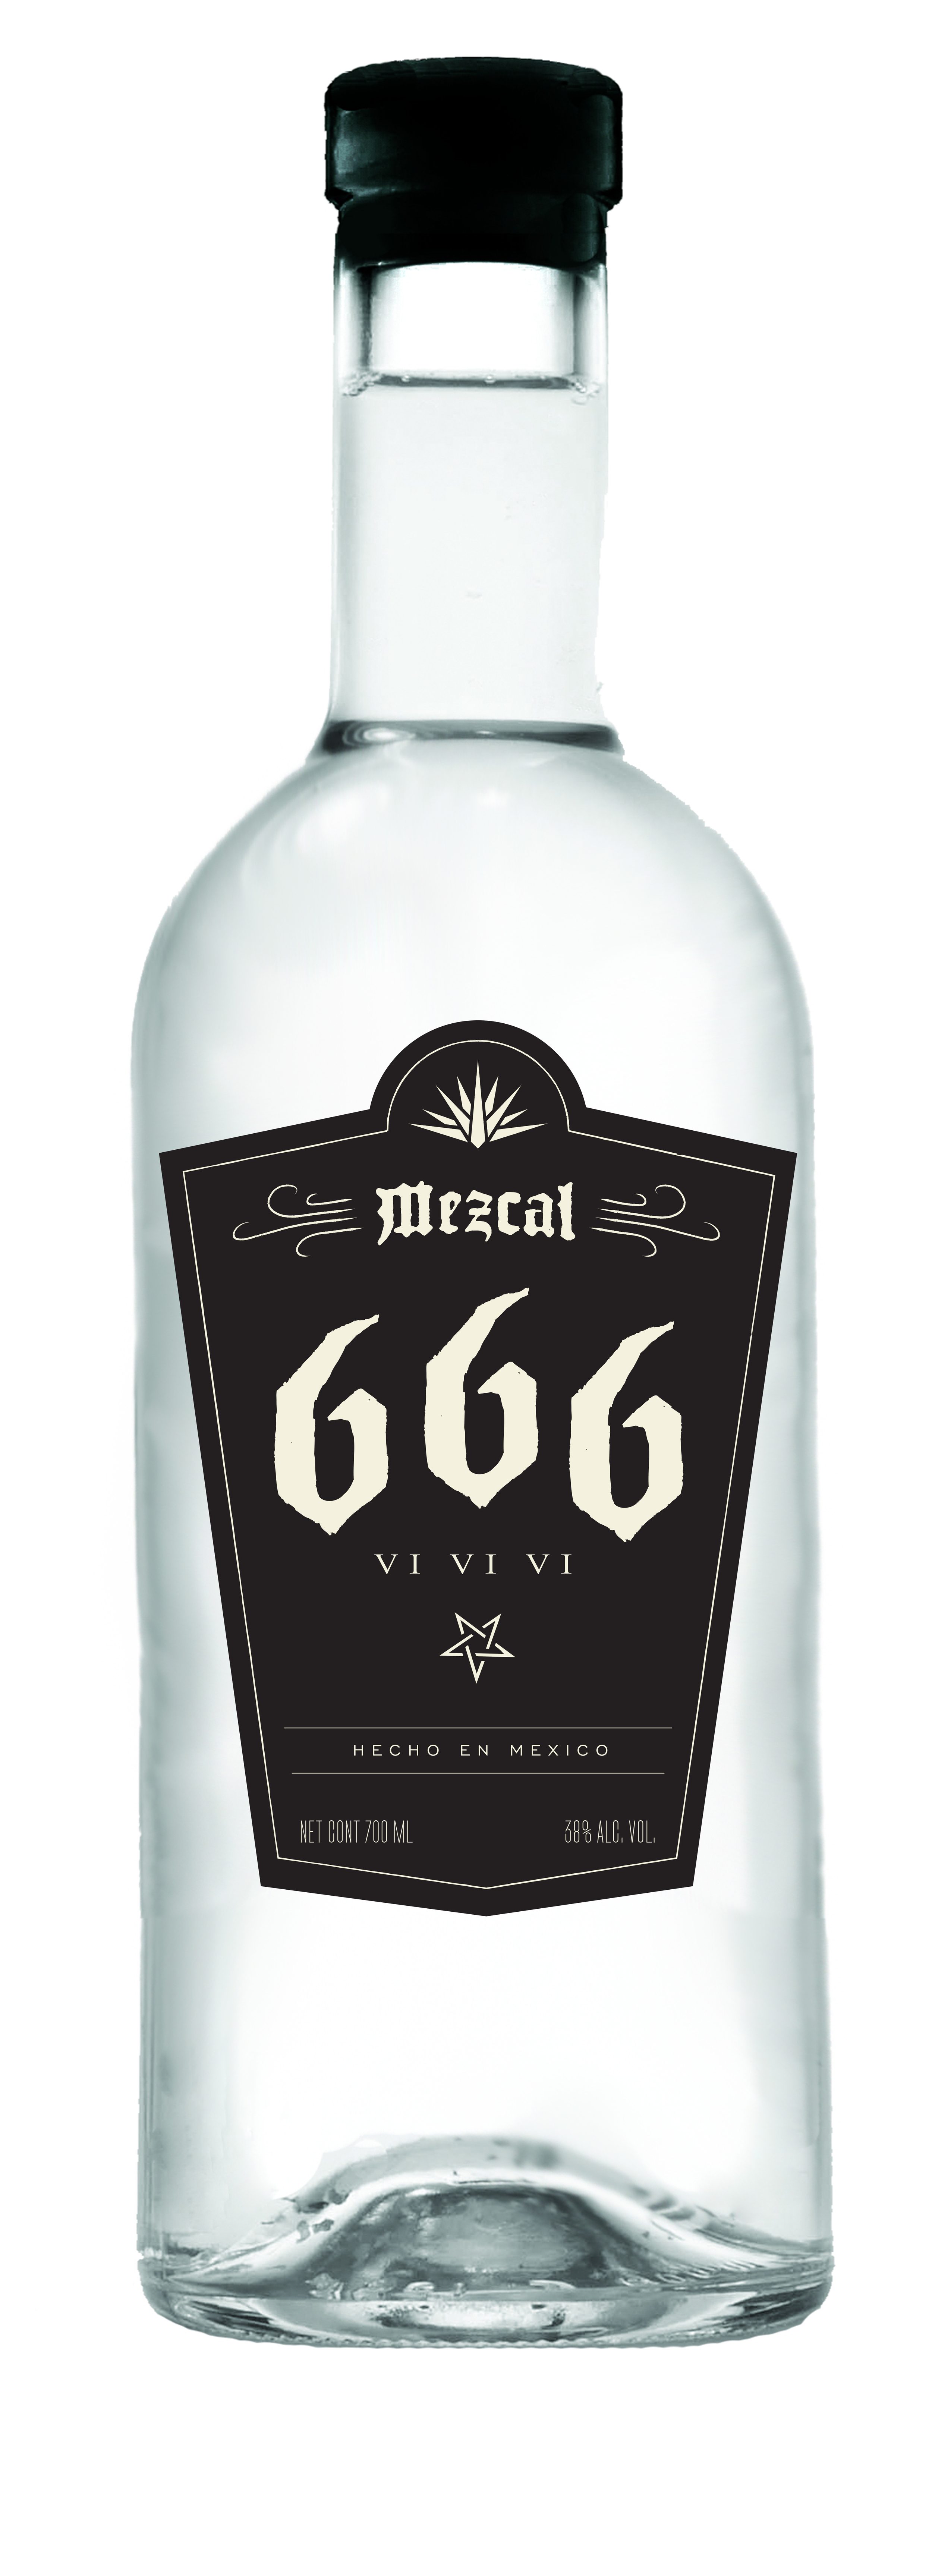 Mezcal 666 Bottles opt2_0013_666 black.jpg